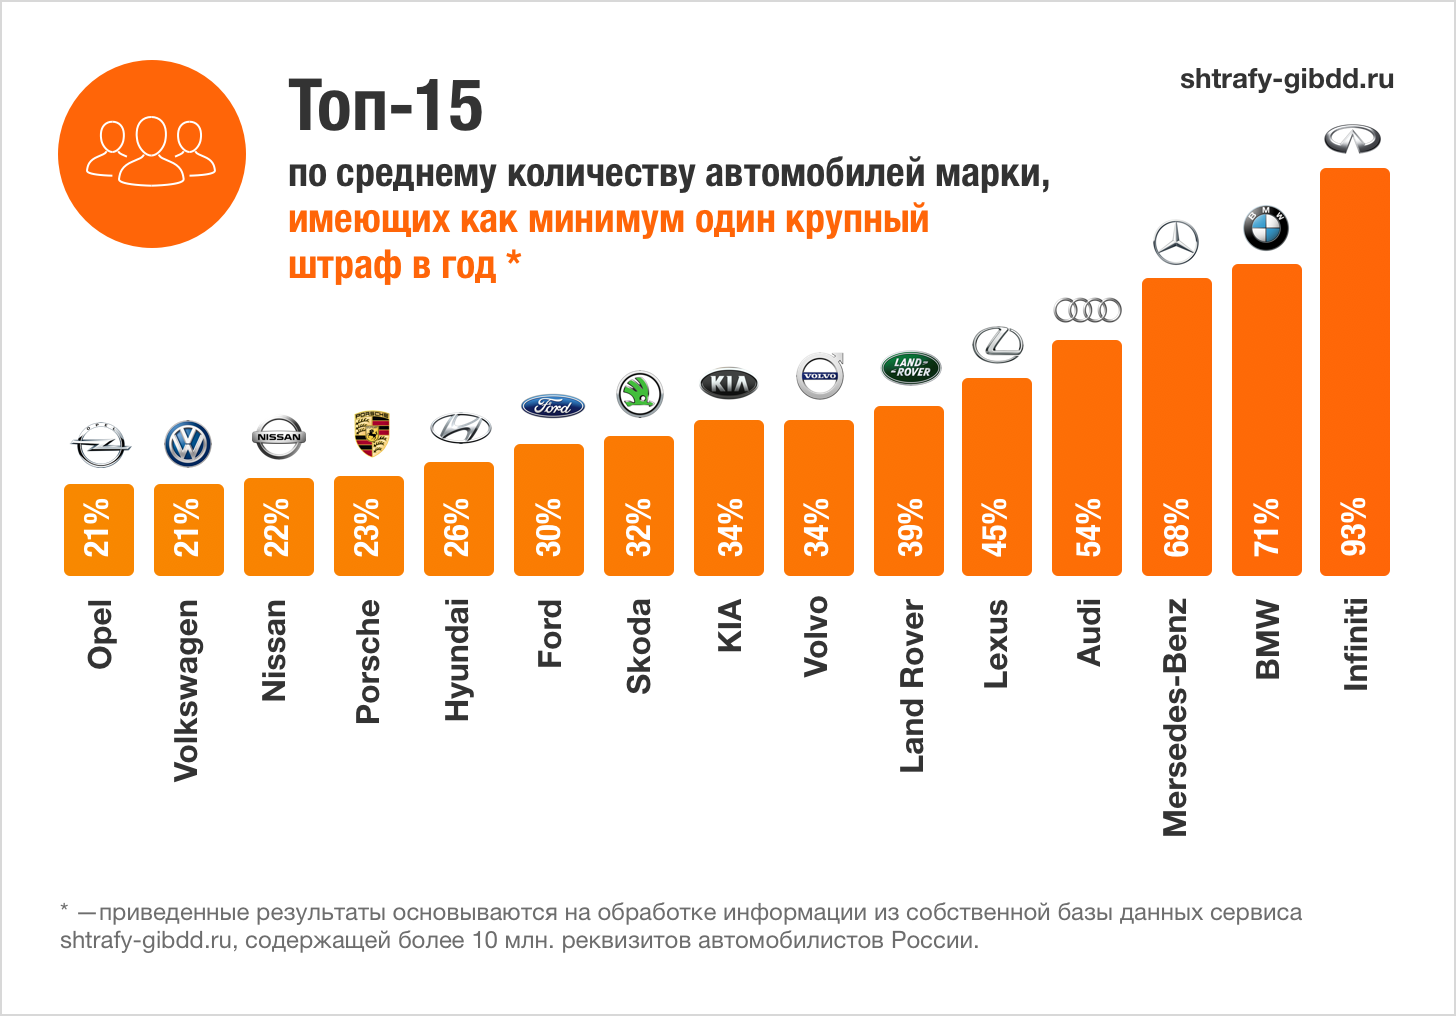 Рейтинг ТОП-15 «ШТРАФоопасных» автомобильных марок в России